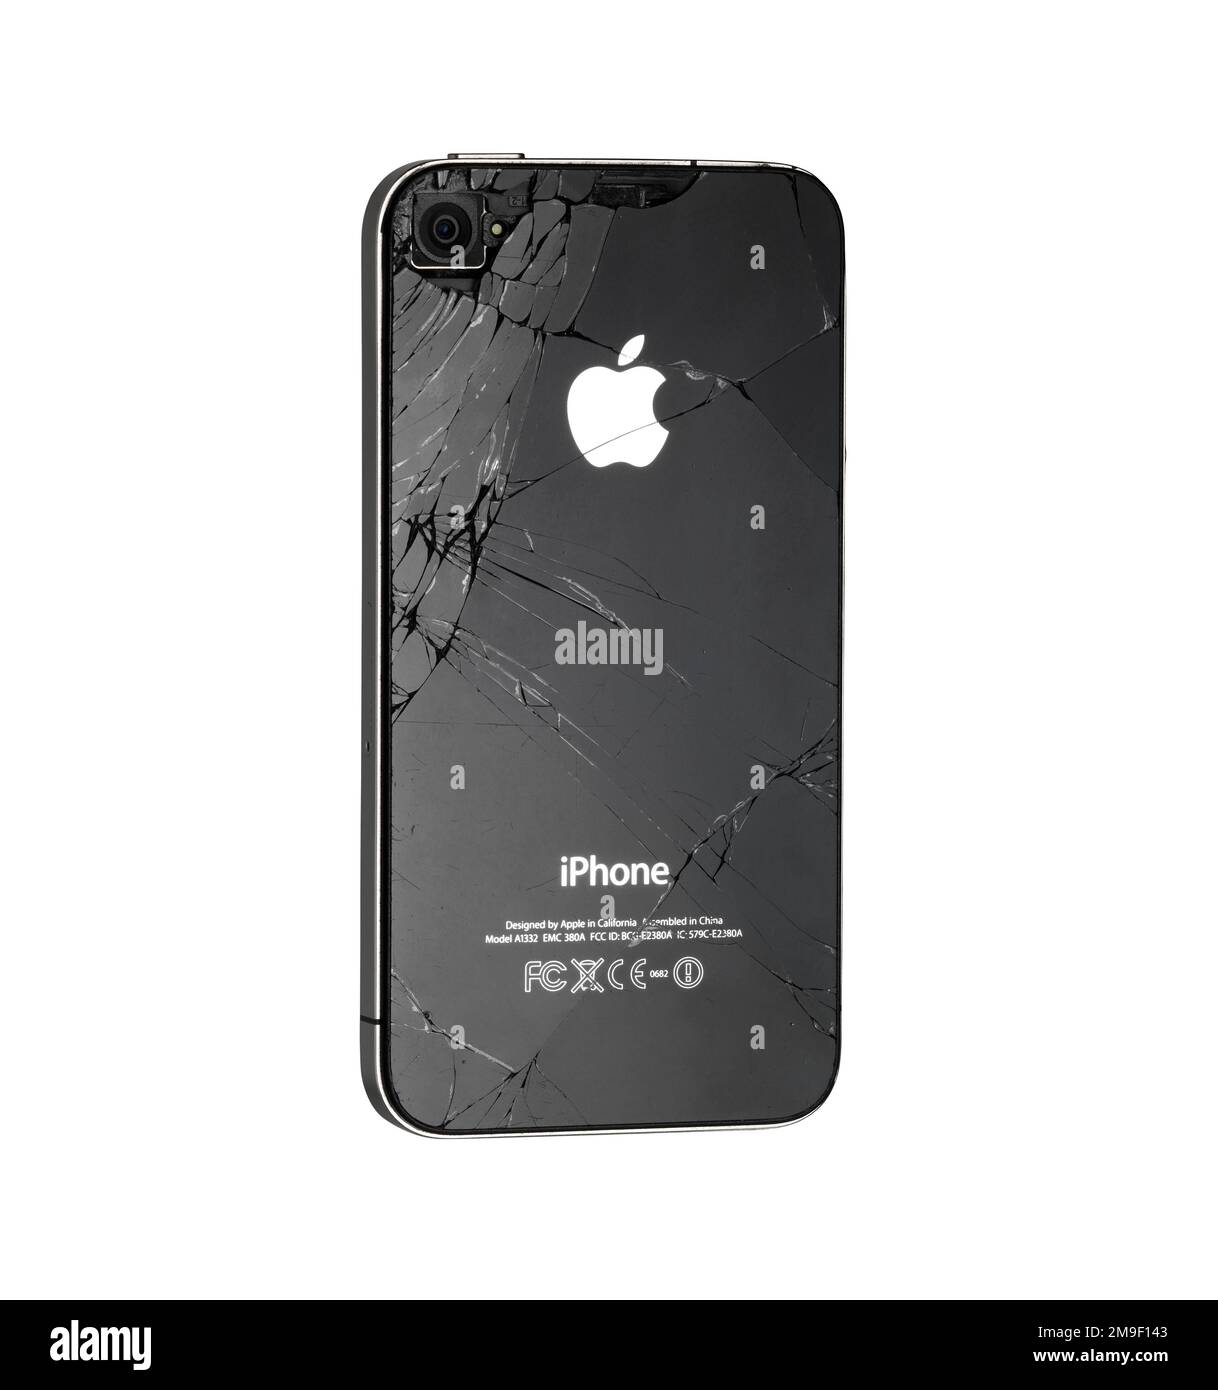 Barcelone- Espagne - 22 juin 2015- Studio tourné d'un iPhone 4 d'Apple Inc. Avec logo et design de marques. Modèle noir gravement endommagé Banque D'Images